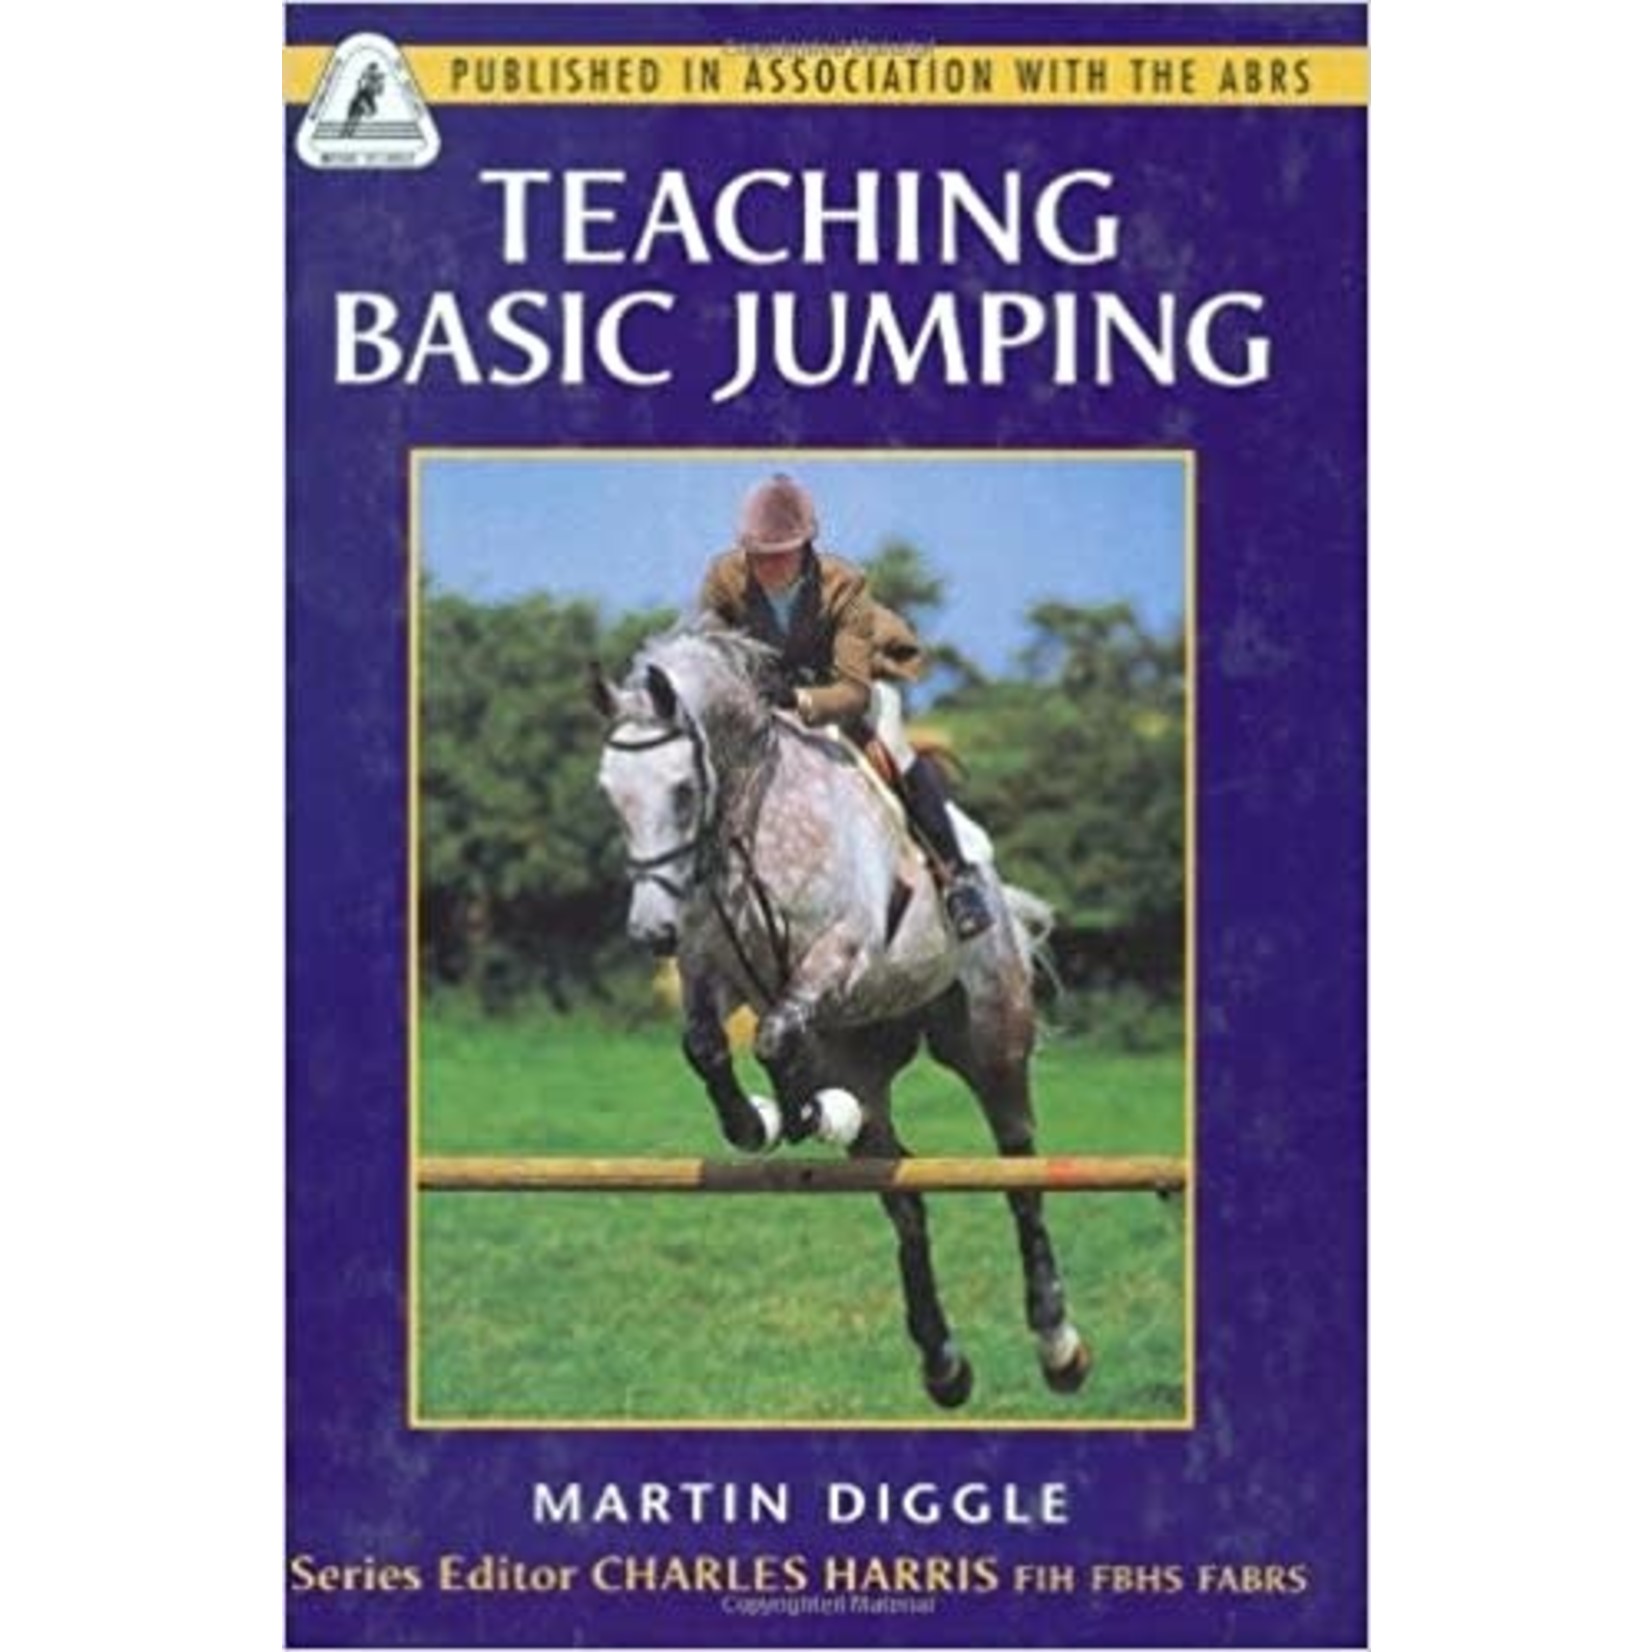 Teaching Basic Jumping